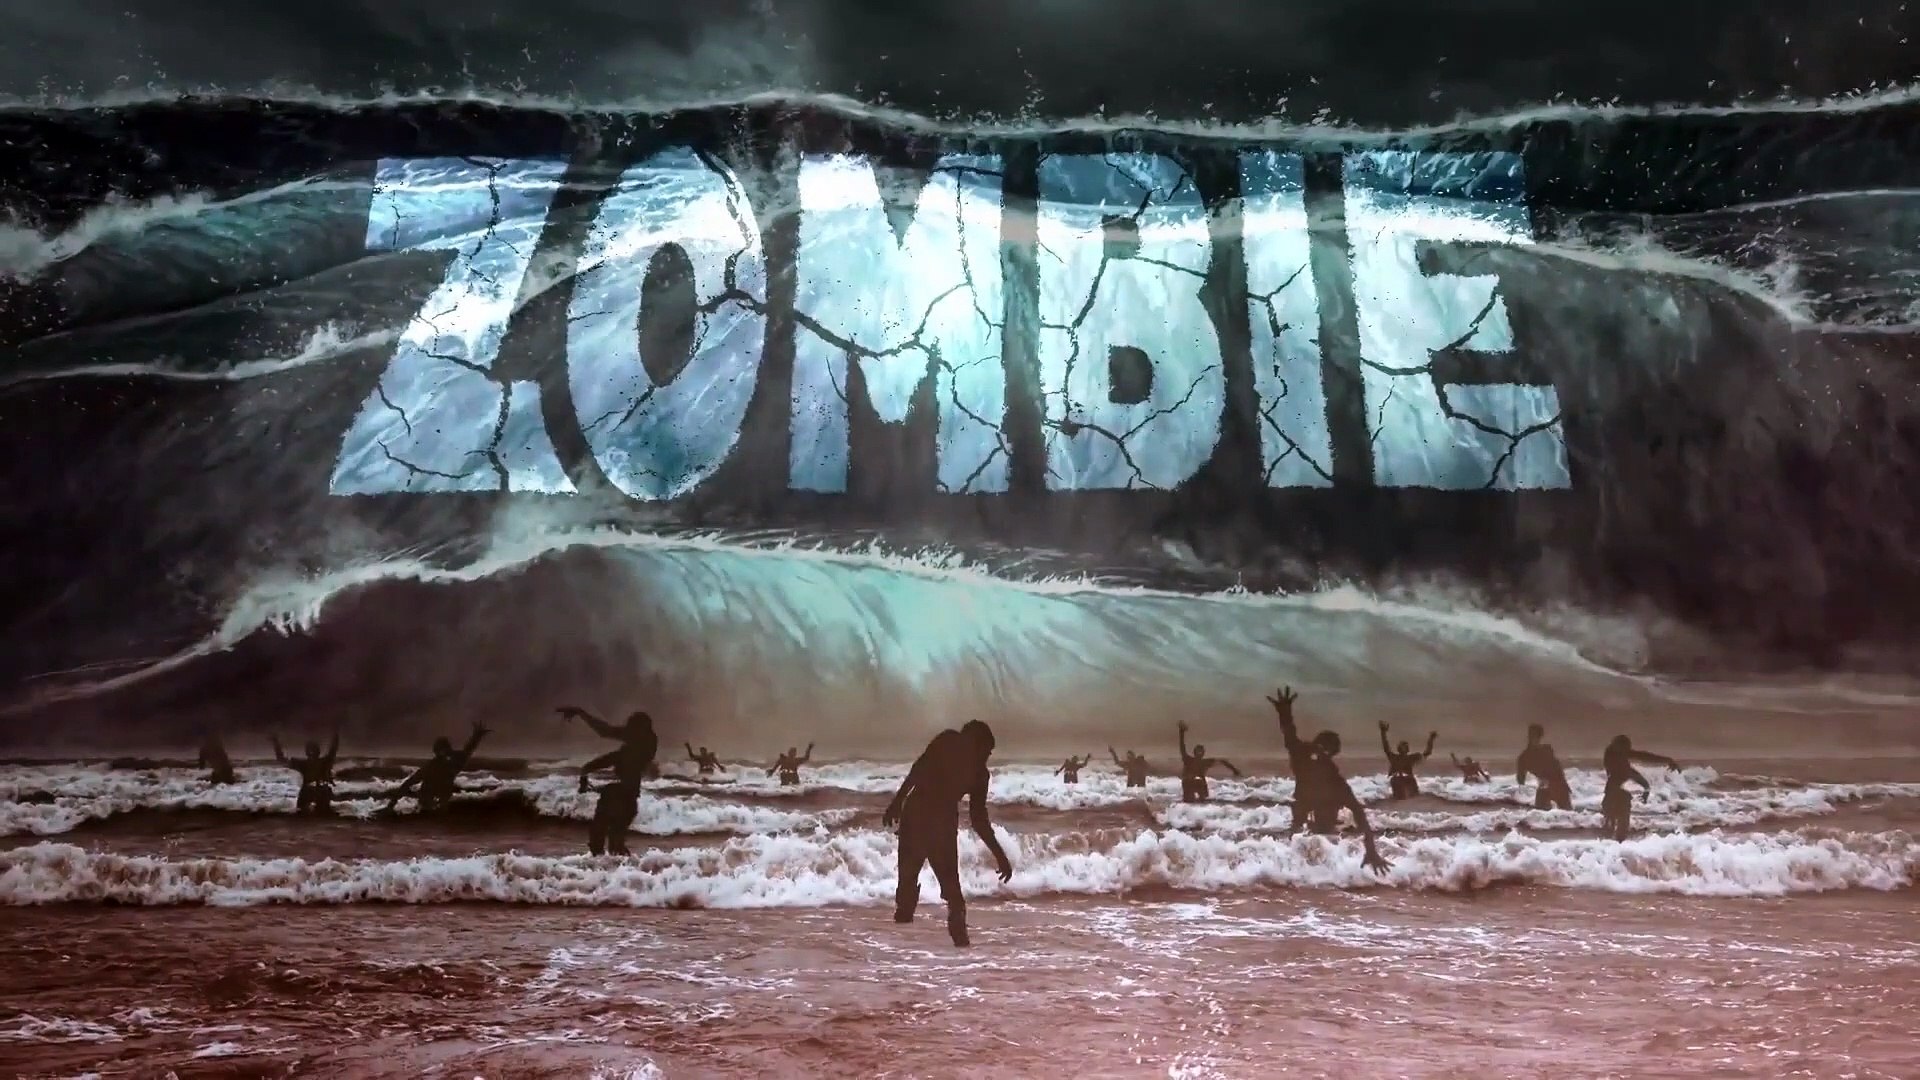 Zombie Tidal Wave (Syfy) Zombie Tsunami Trailer (2019) Ian Ziering stars - video Dailymotion